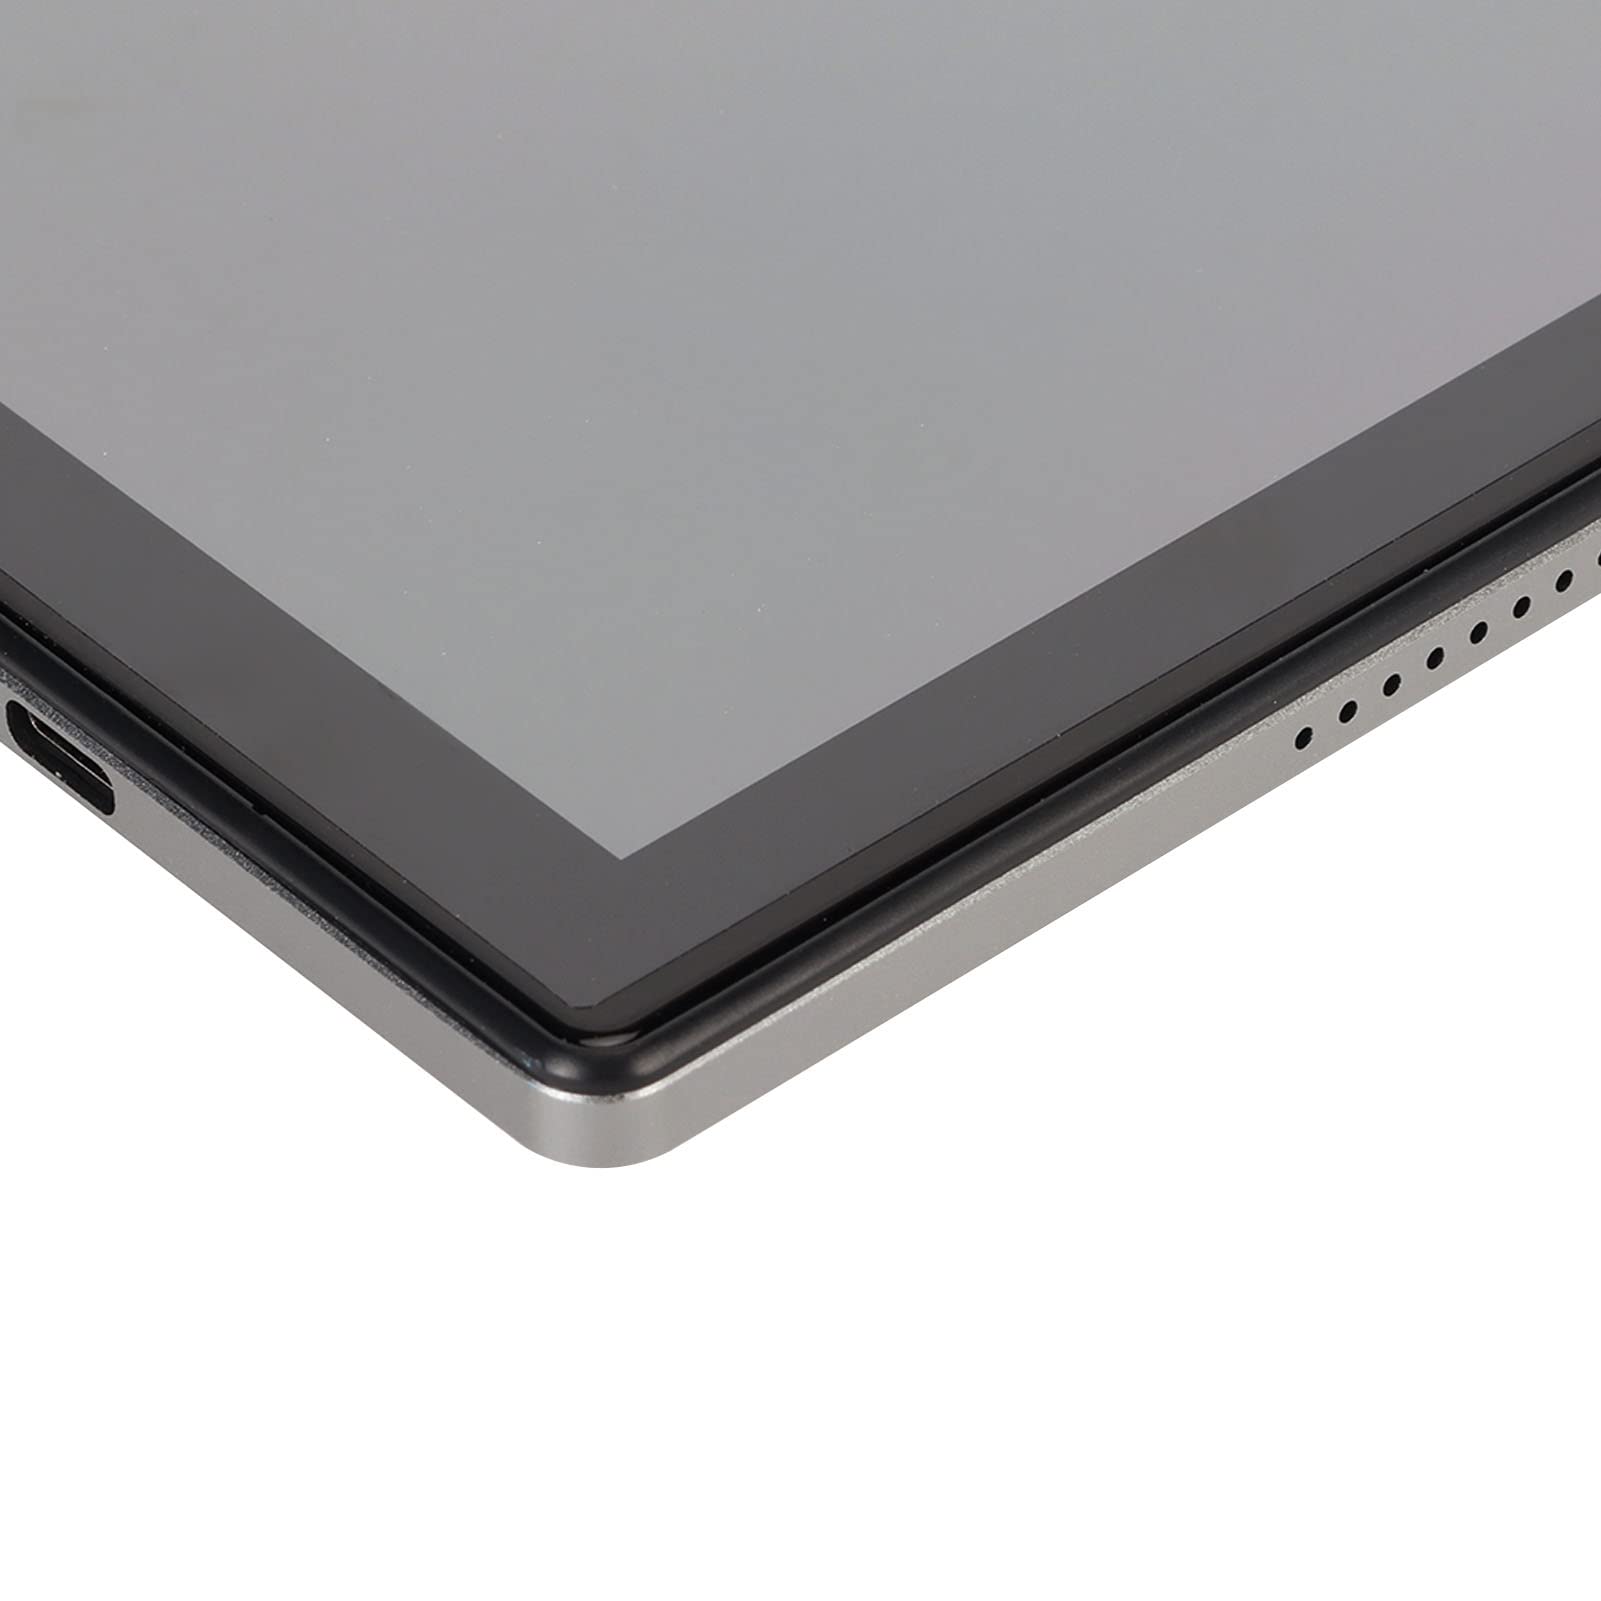 Honio Tablet PC, FHD Tablet 2 in 1 8GB RAM 256GB ROM 4G (US Plug)